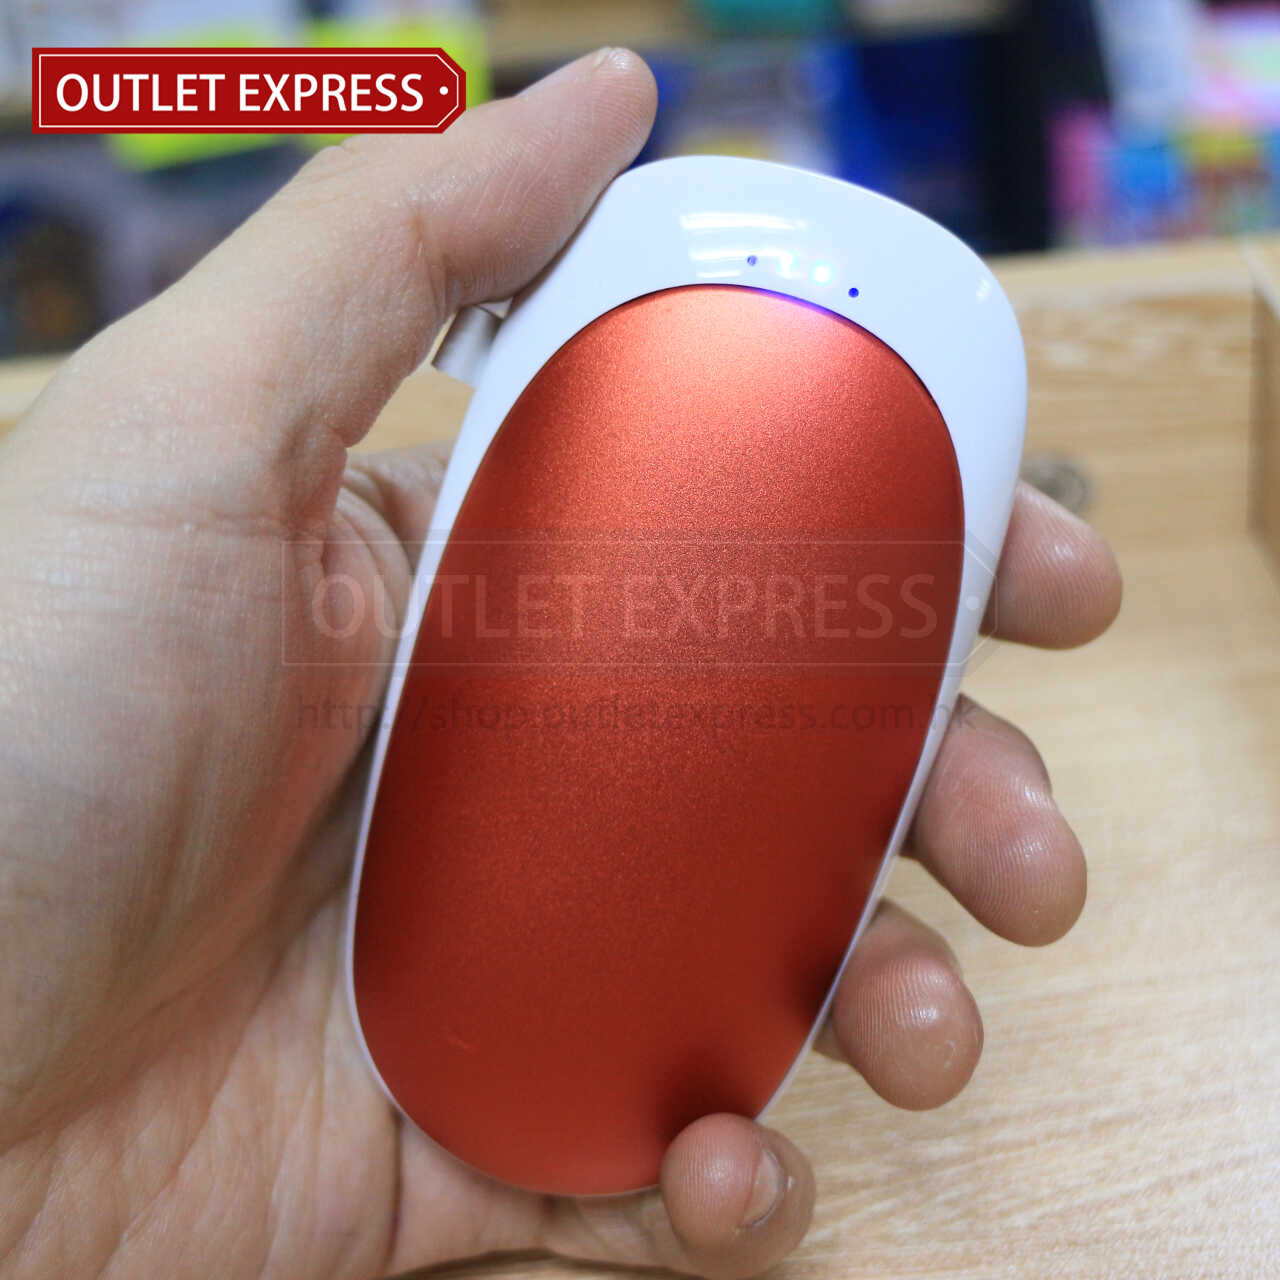 小海豚移動電源暖蛋 充電模式- Outlet Express HK生活百貨城實拍相片